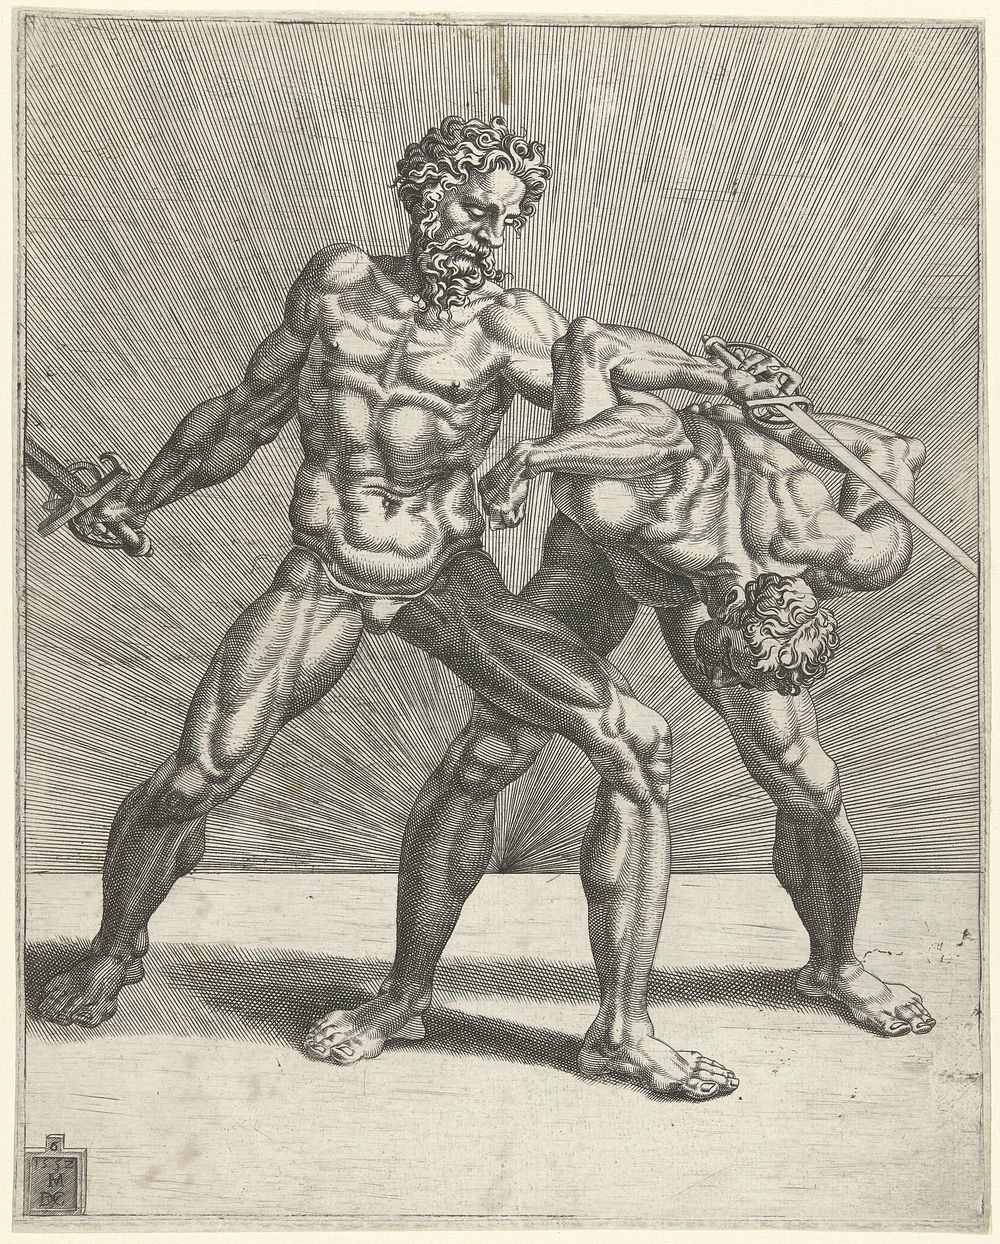 Twee zwaardvechters (1552) by Dirck Volckertsz Coornhert and Maarten van Heemskerck